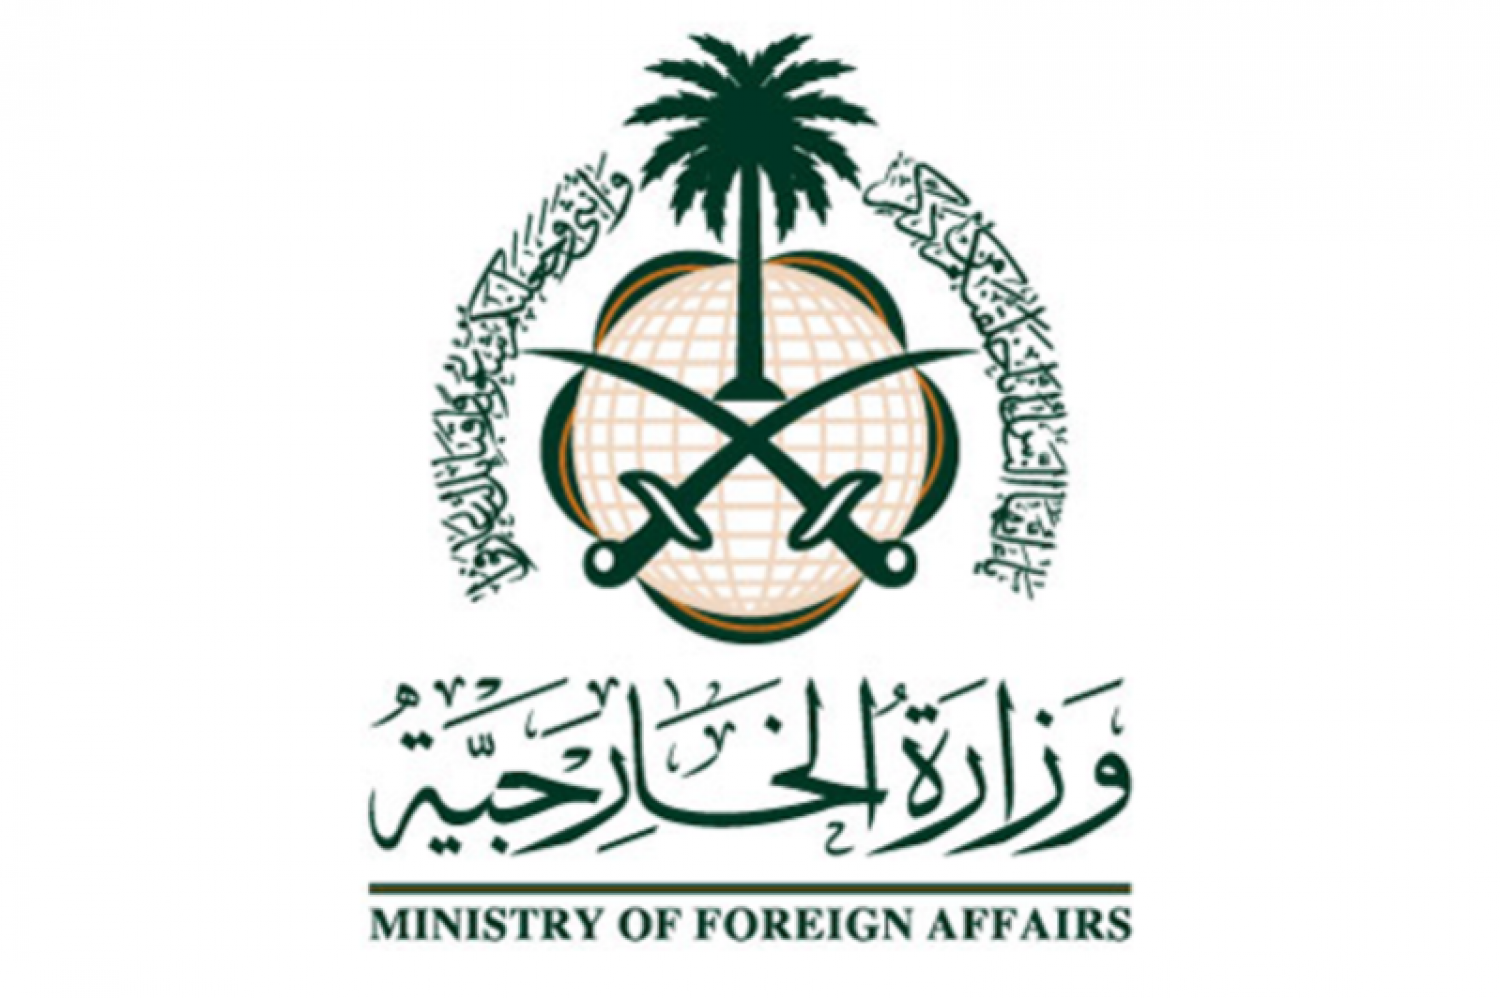 تطبيق وزارة الخارجية السعودية، يمكنك من خلاله تنفيذ الكثير من الخدمات.. تعرف عليها مدونة نظام أون لاين التقنية